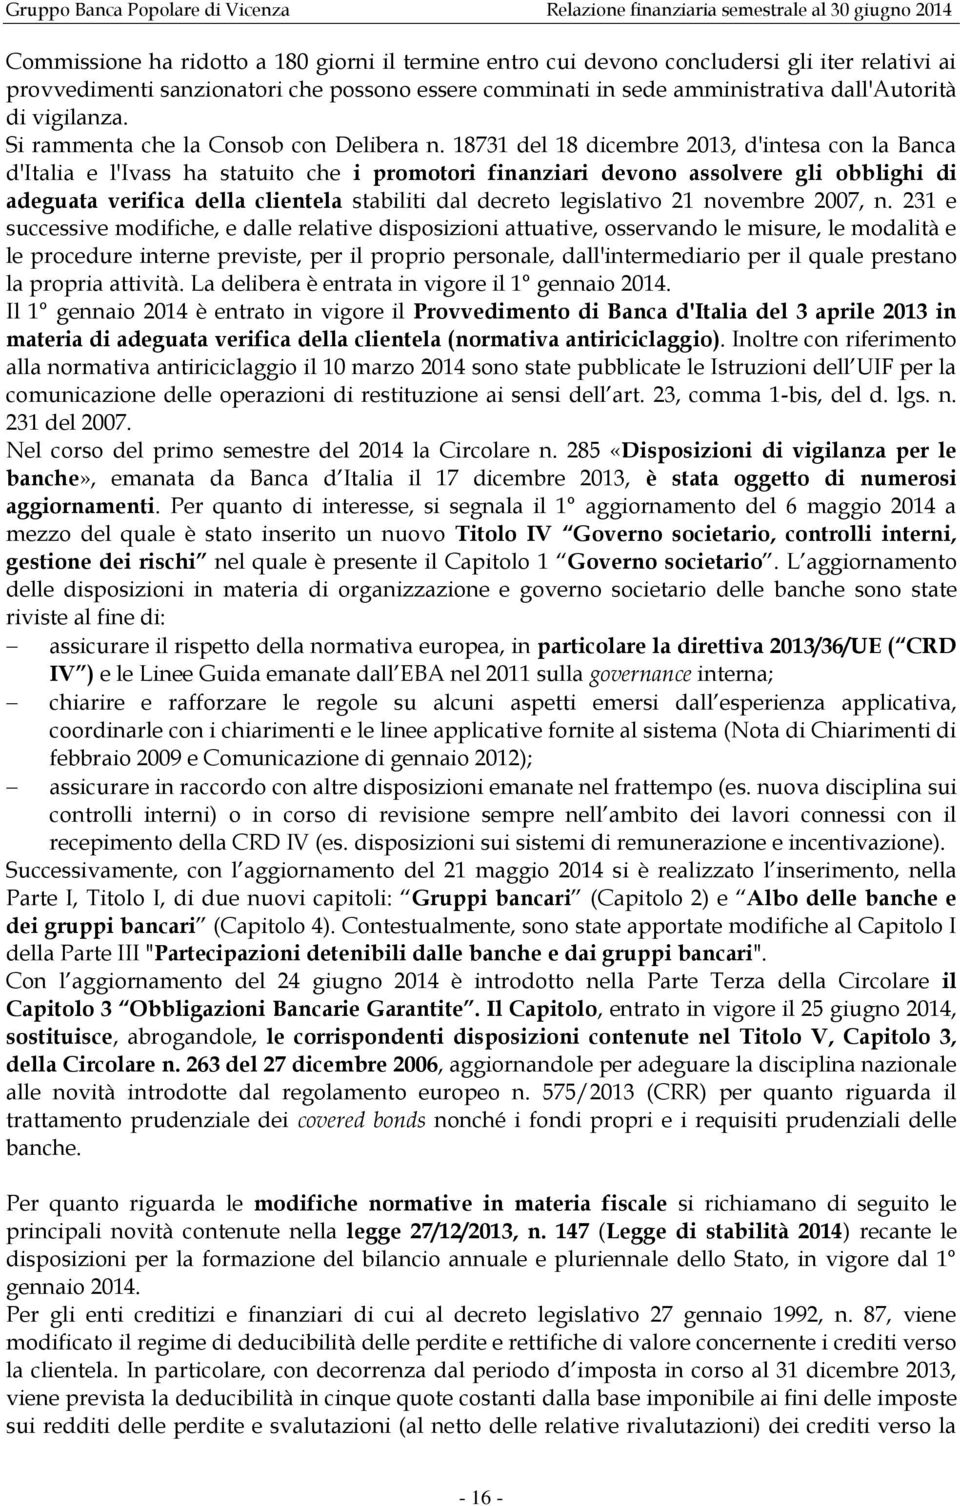 18731 del 18 dicembre 2013, d'intesa con la Banca d'italia e l'ivass ha statuito che i promotori finanziari devono assolvere gli obblighi di adeguata verifica della clientela stabiliti dal decreto